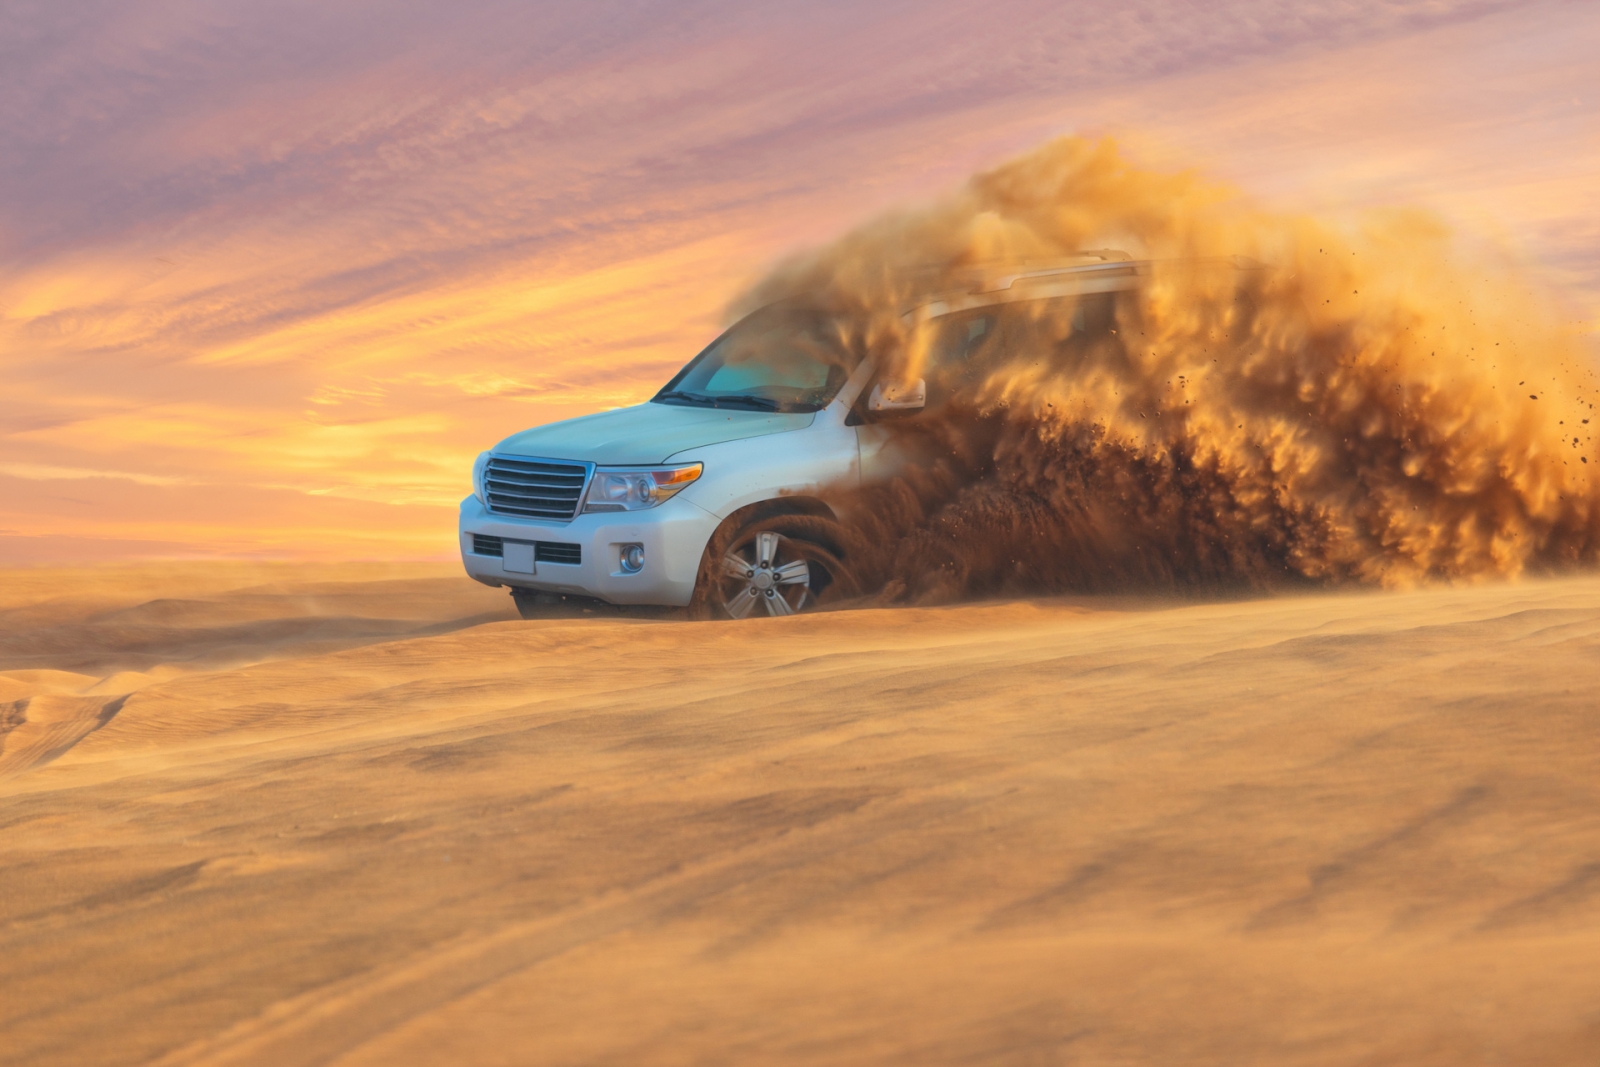 Offroad-Abenteuer mit SUV in der Arabischen Wüste bei Sonnenuntergang.